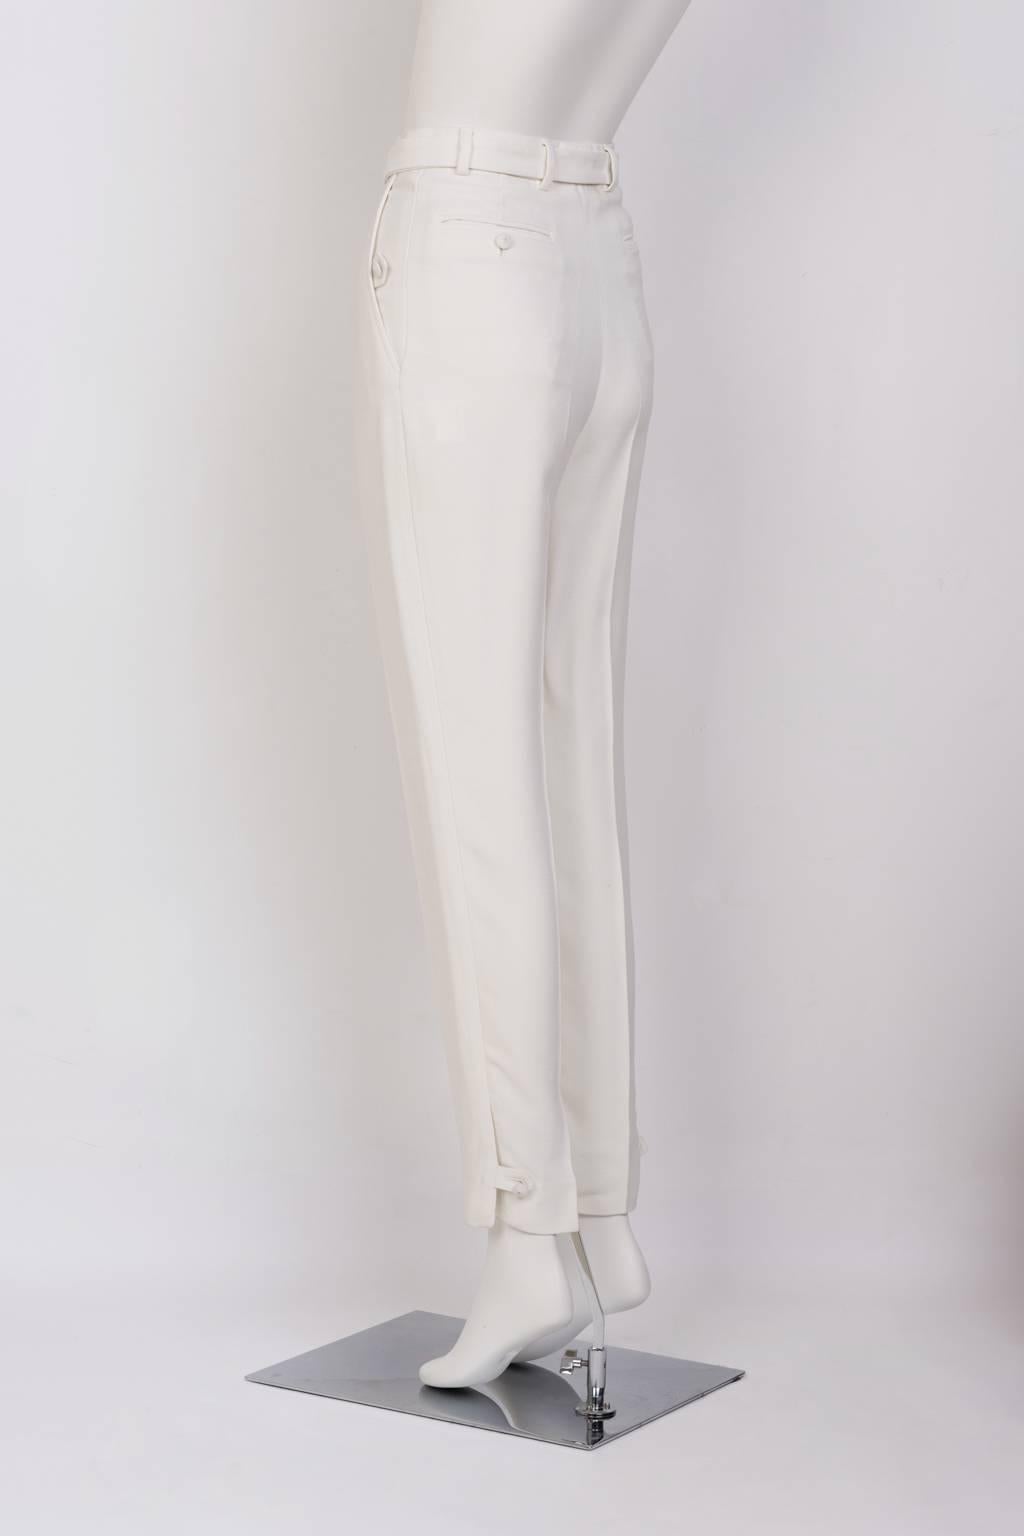 STEFANO PILATI For YSL White Crepe Trouser In Excellent Condition For Sale In Xiamen, Fujian